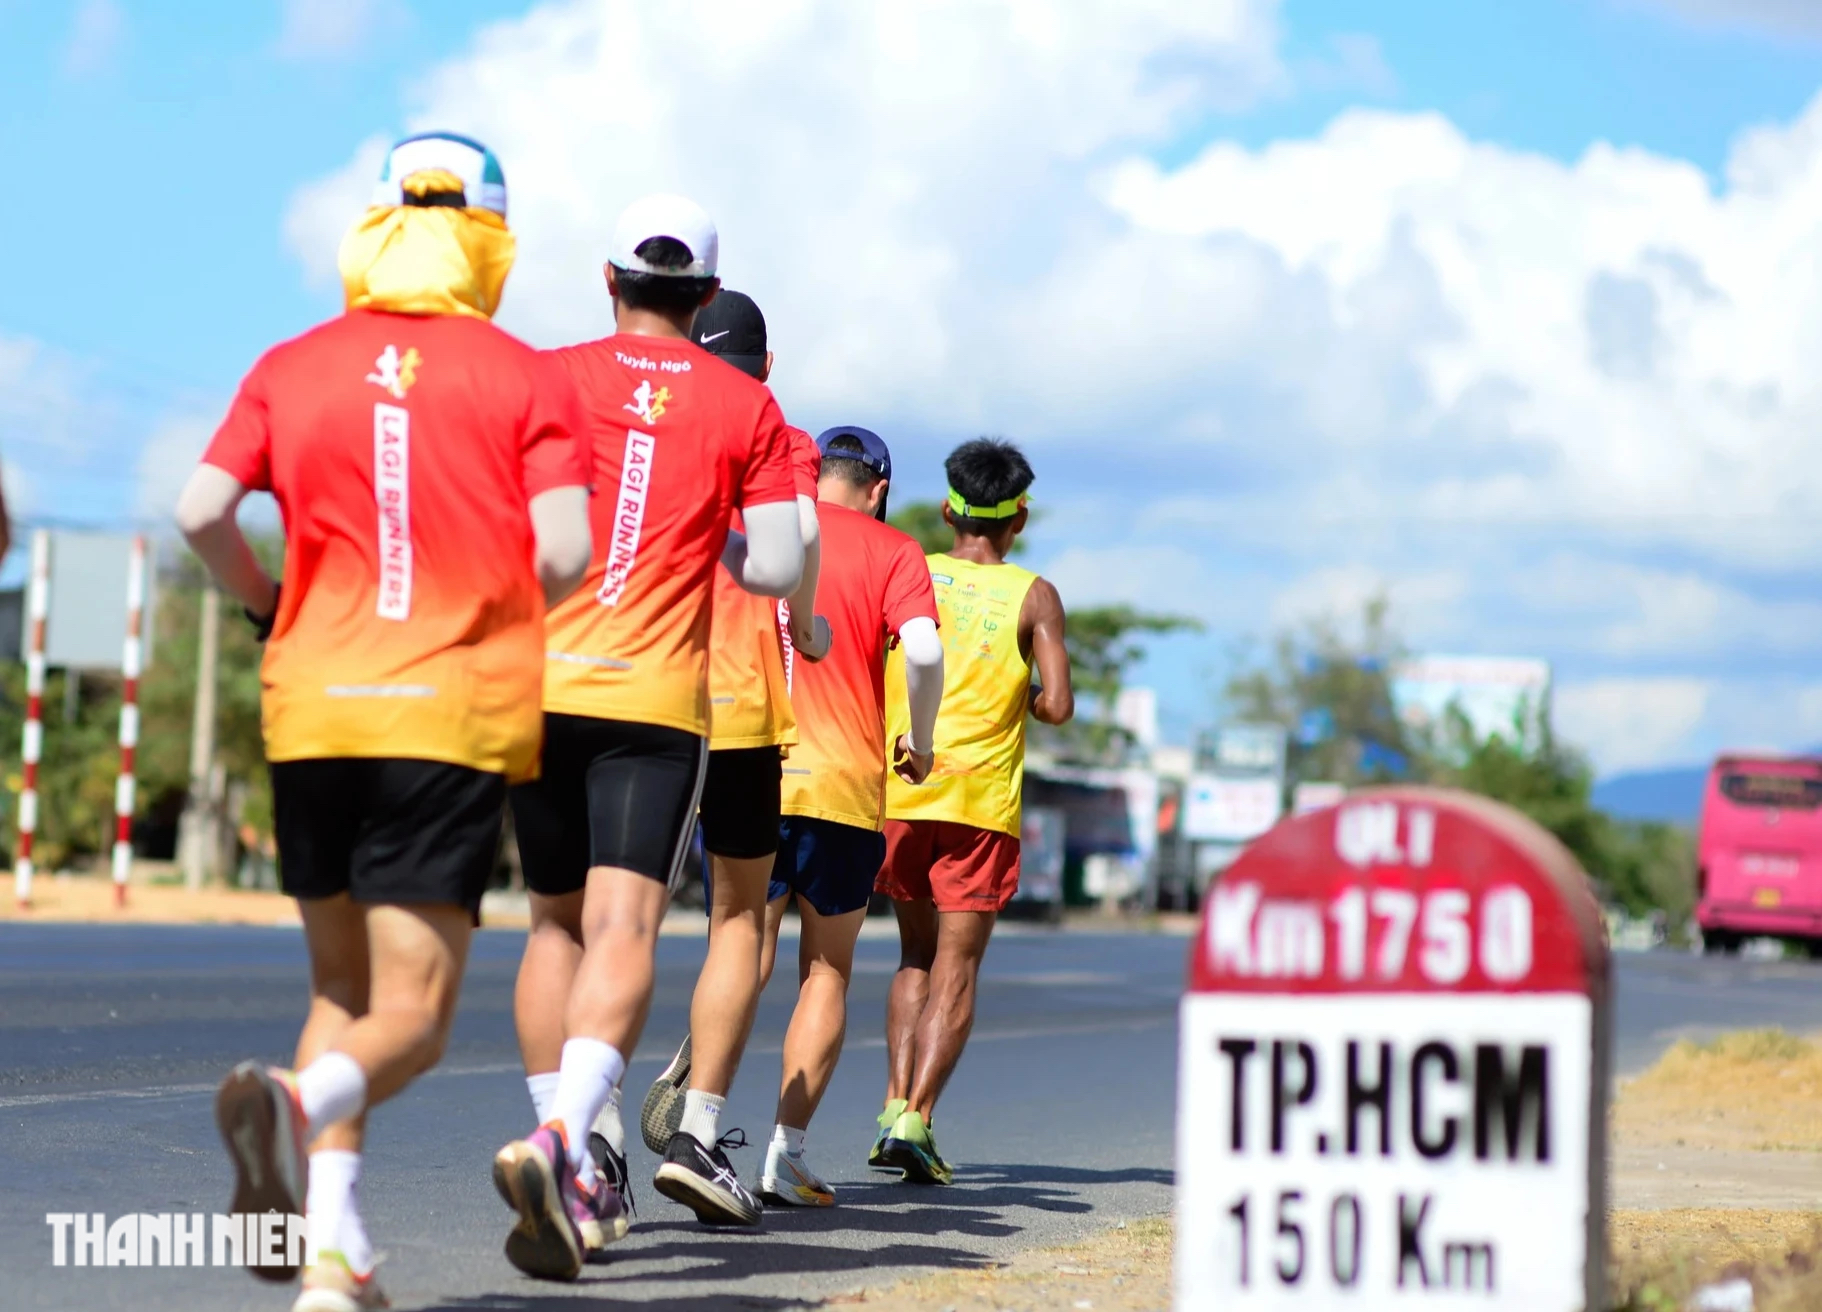 Đồng hành với Long trong buổi sáng có CLB Lagi Runners chạy cùng anh một đoạn.